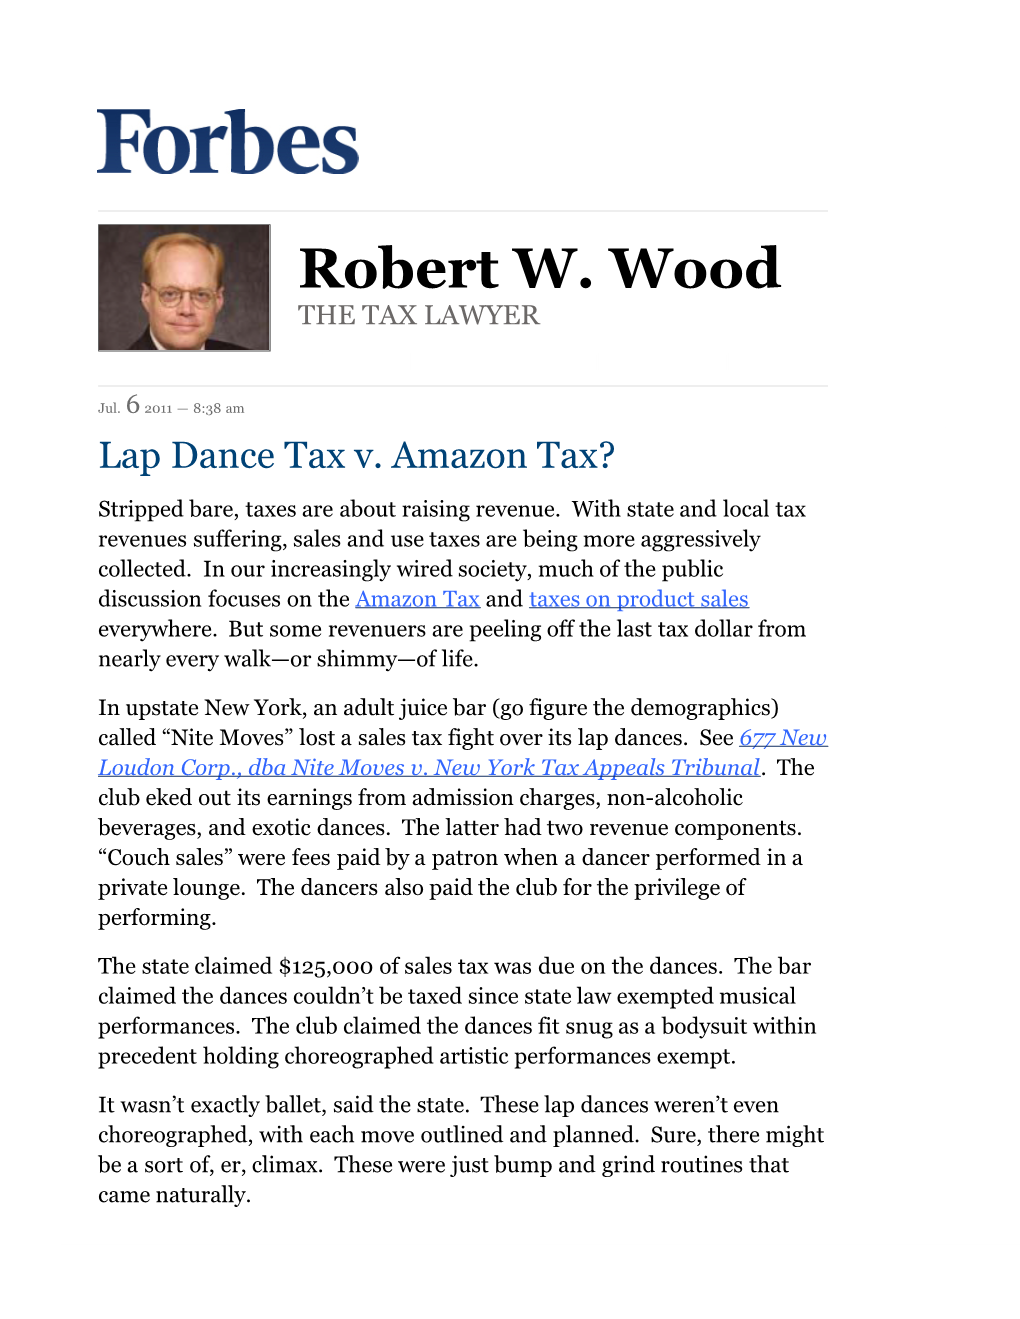 Lap Dance Tax V. Amazon Tax?